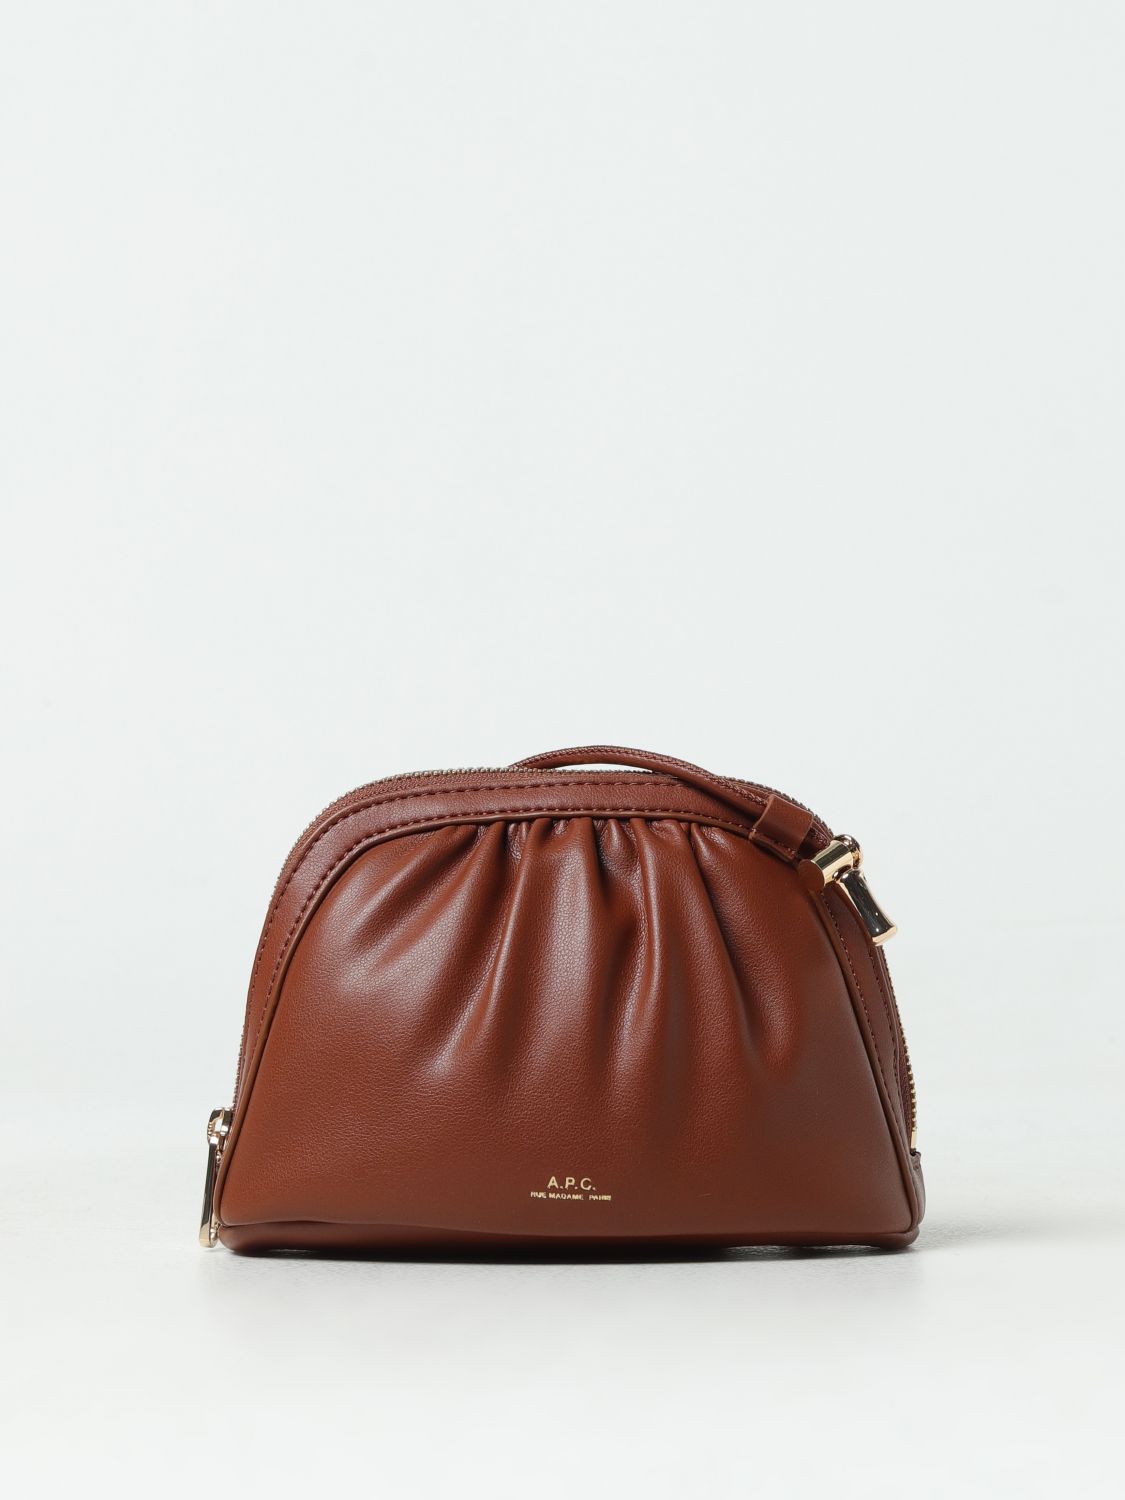 Apc Mini Bag A.p.c. Woman Color Leather